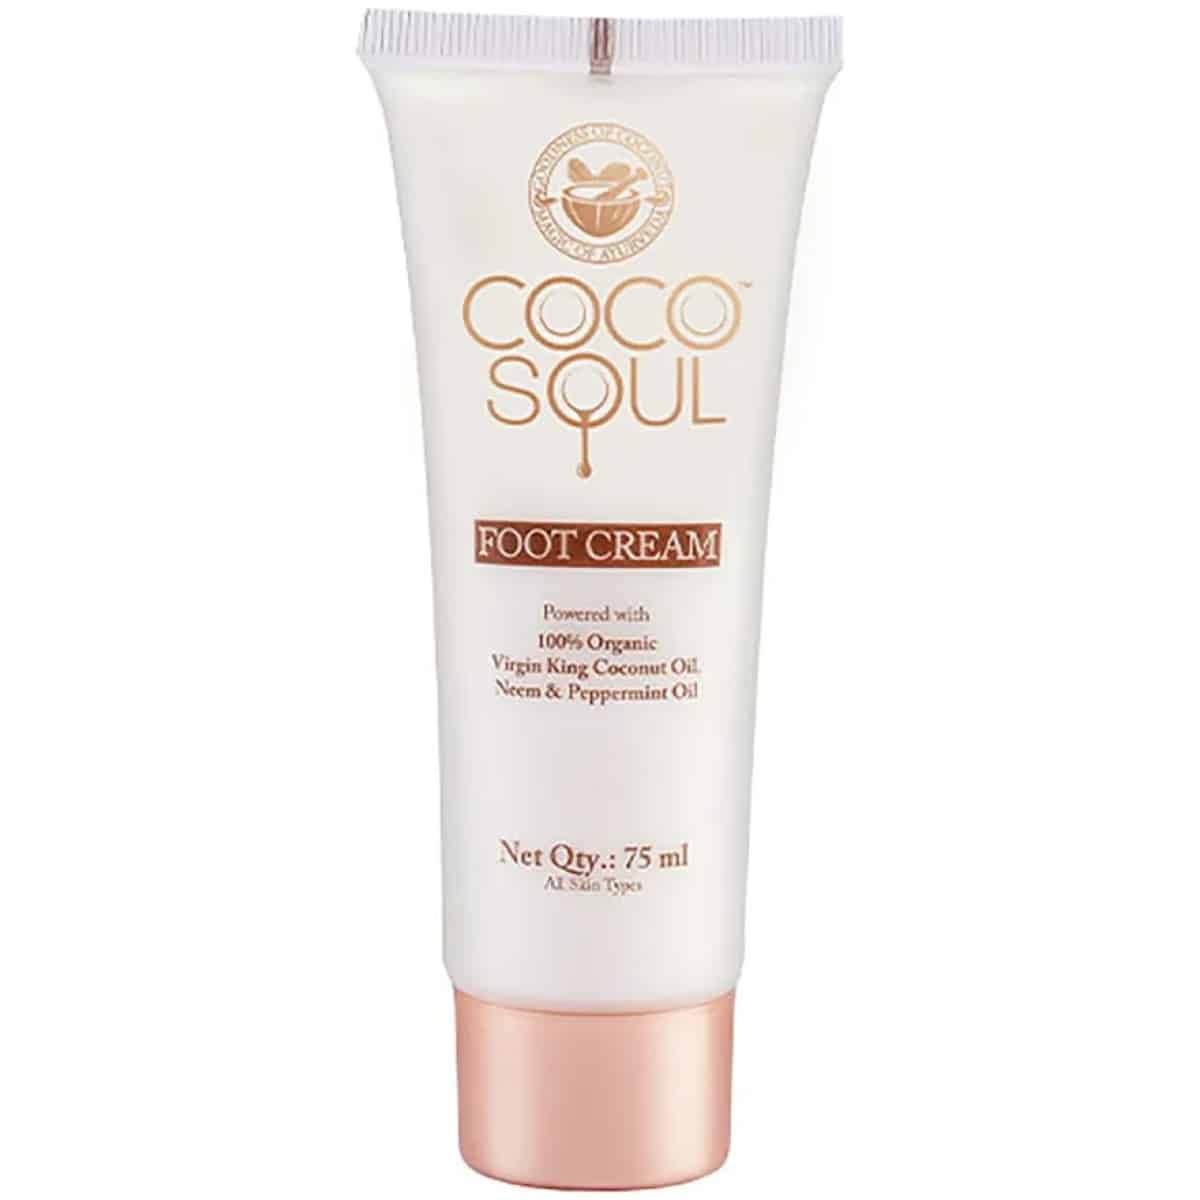 Coco Soul Foot Cream